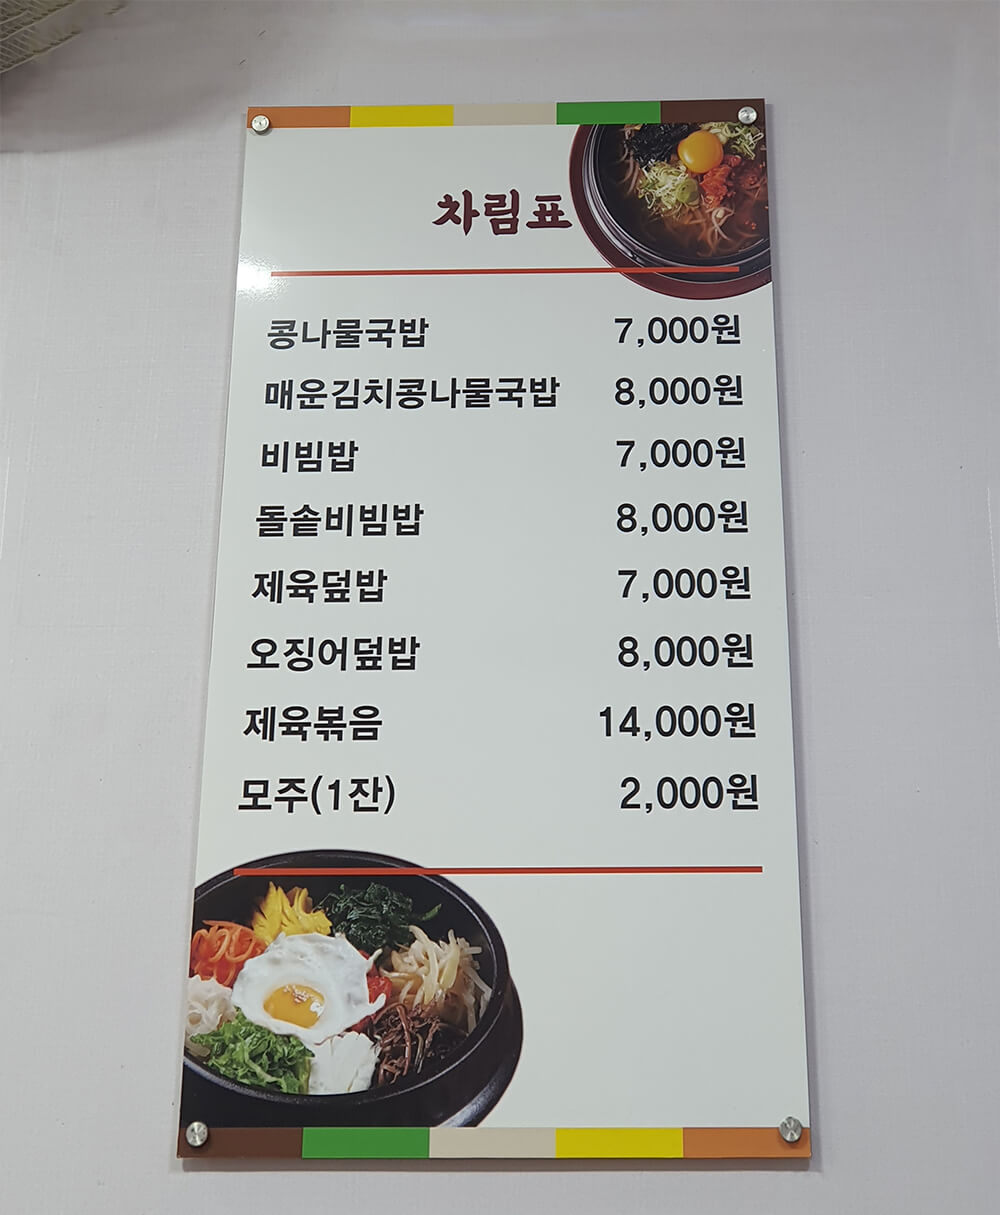 웰빙 콩나물국밥 메뉴